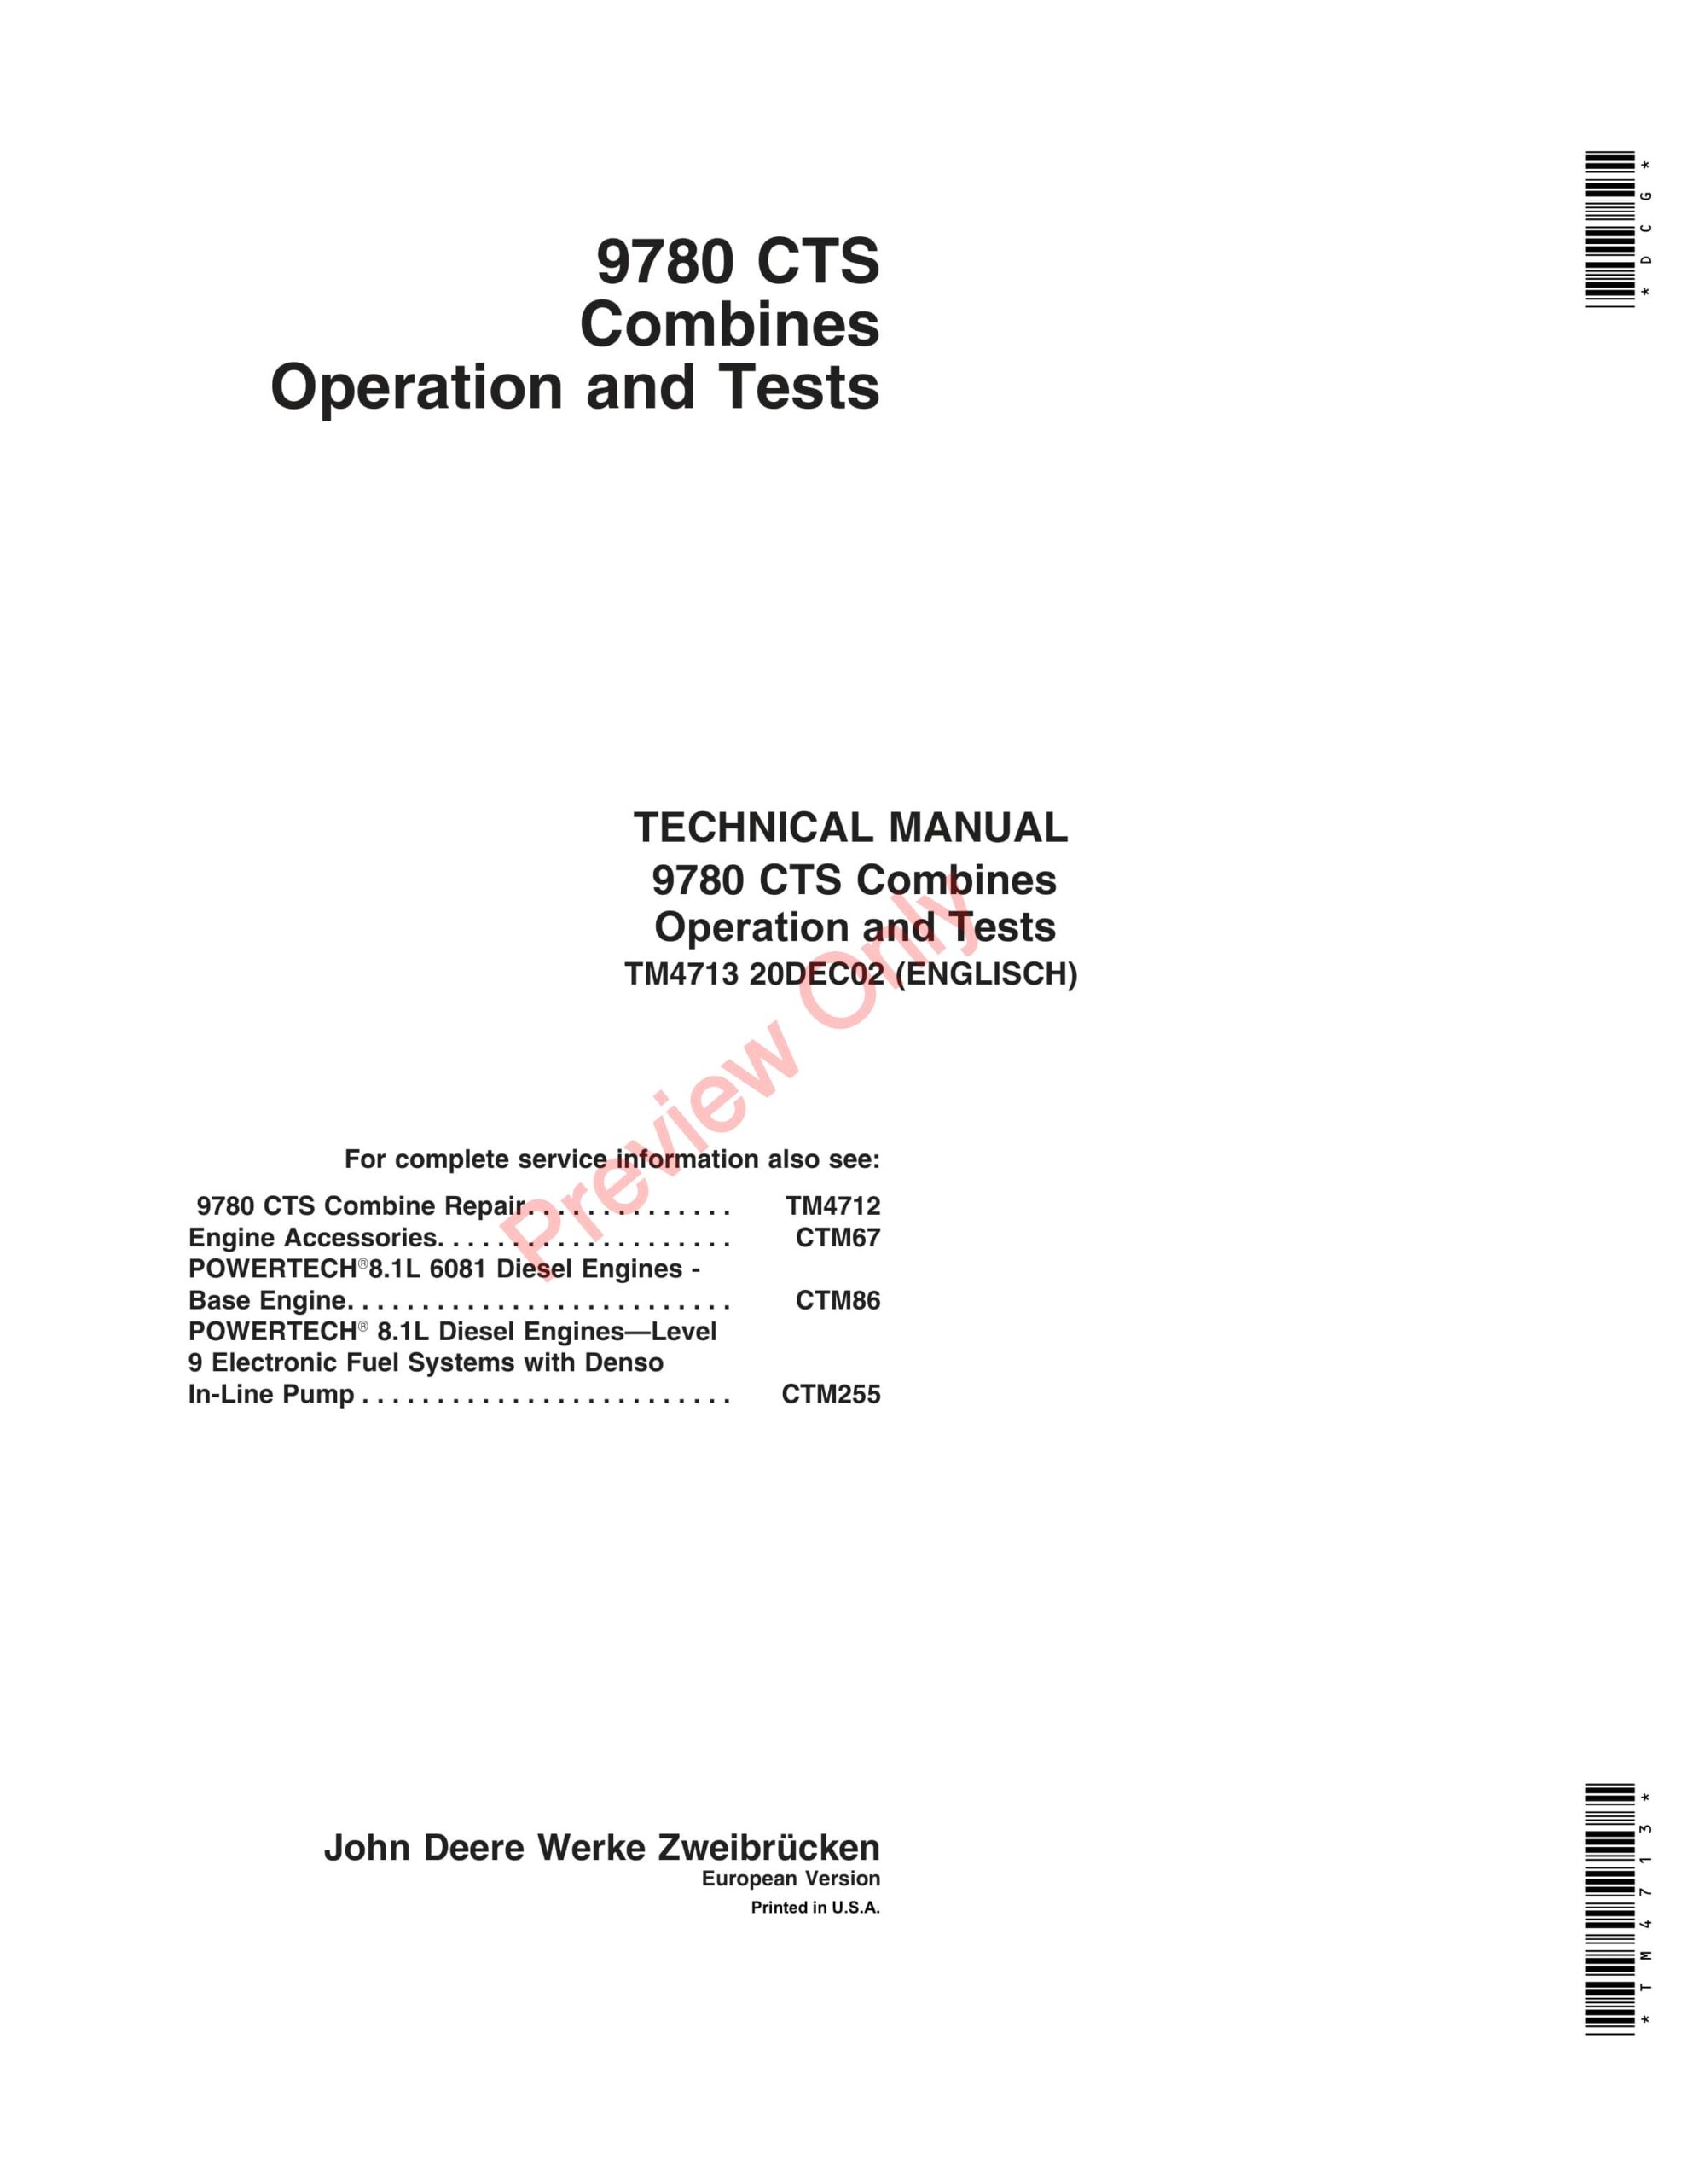 John Deere 9780 CTS Combines Technical Manual TM4713 20DEC02-1